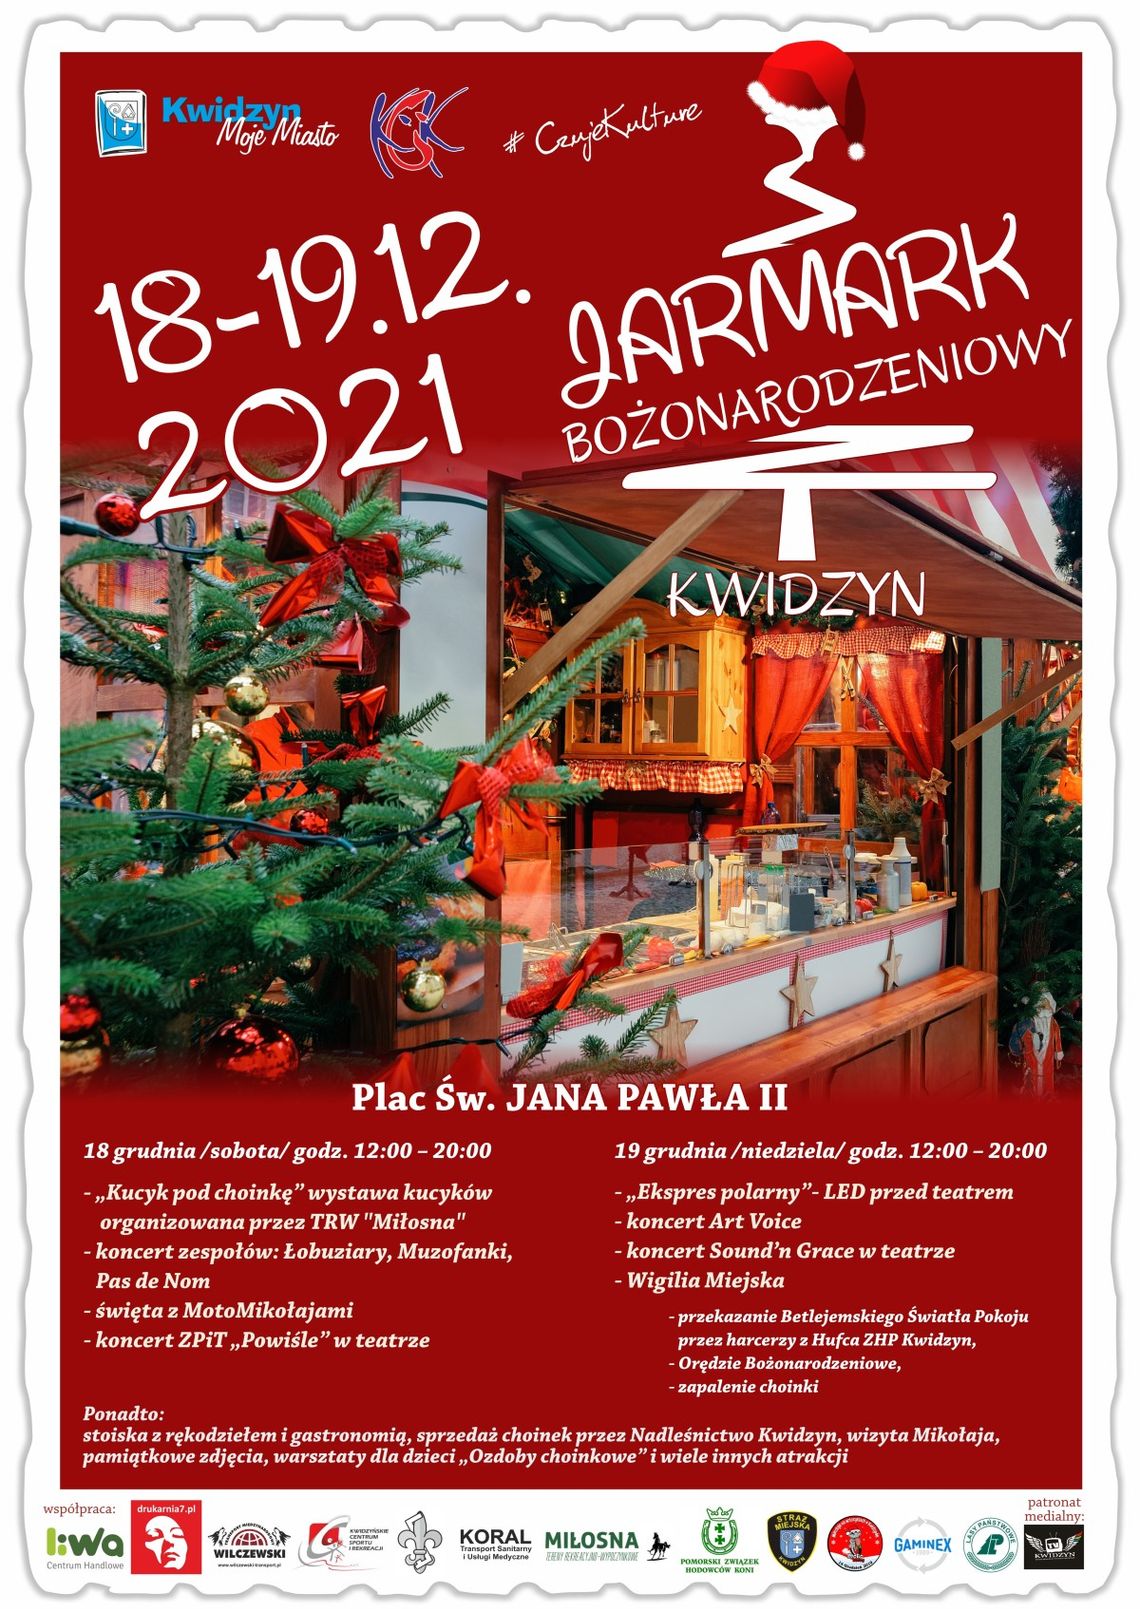 W najbliższy weekend (18-19.12) Jarmark Bożonarodzeniowy na Placu Św. Jana Pawła II w Kwidzynie